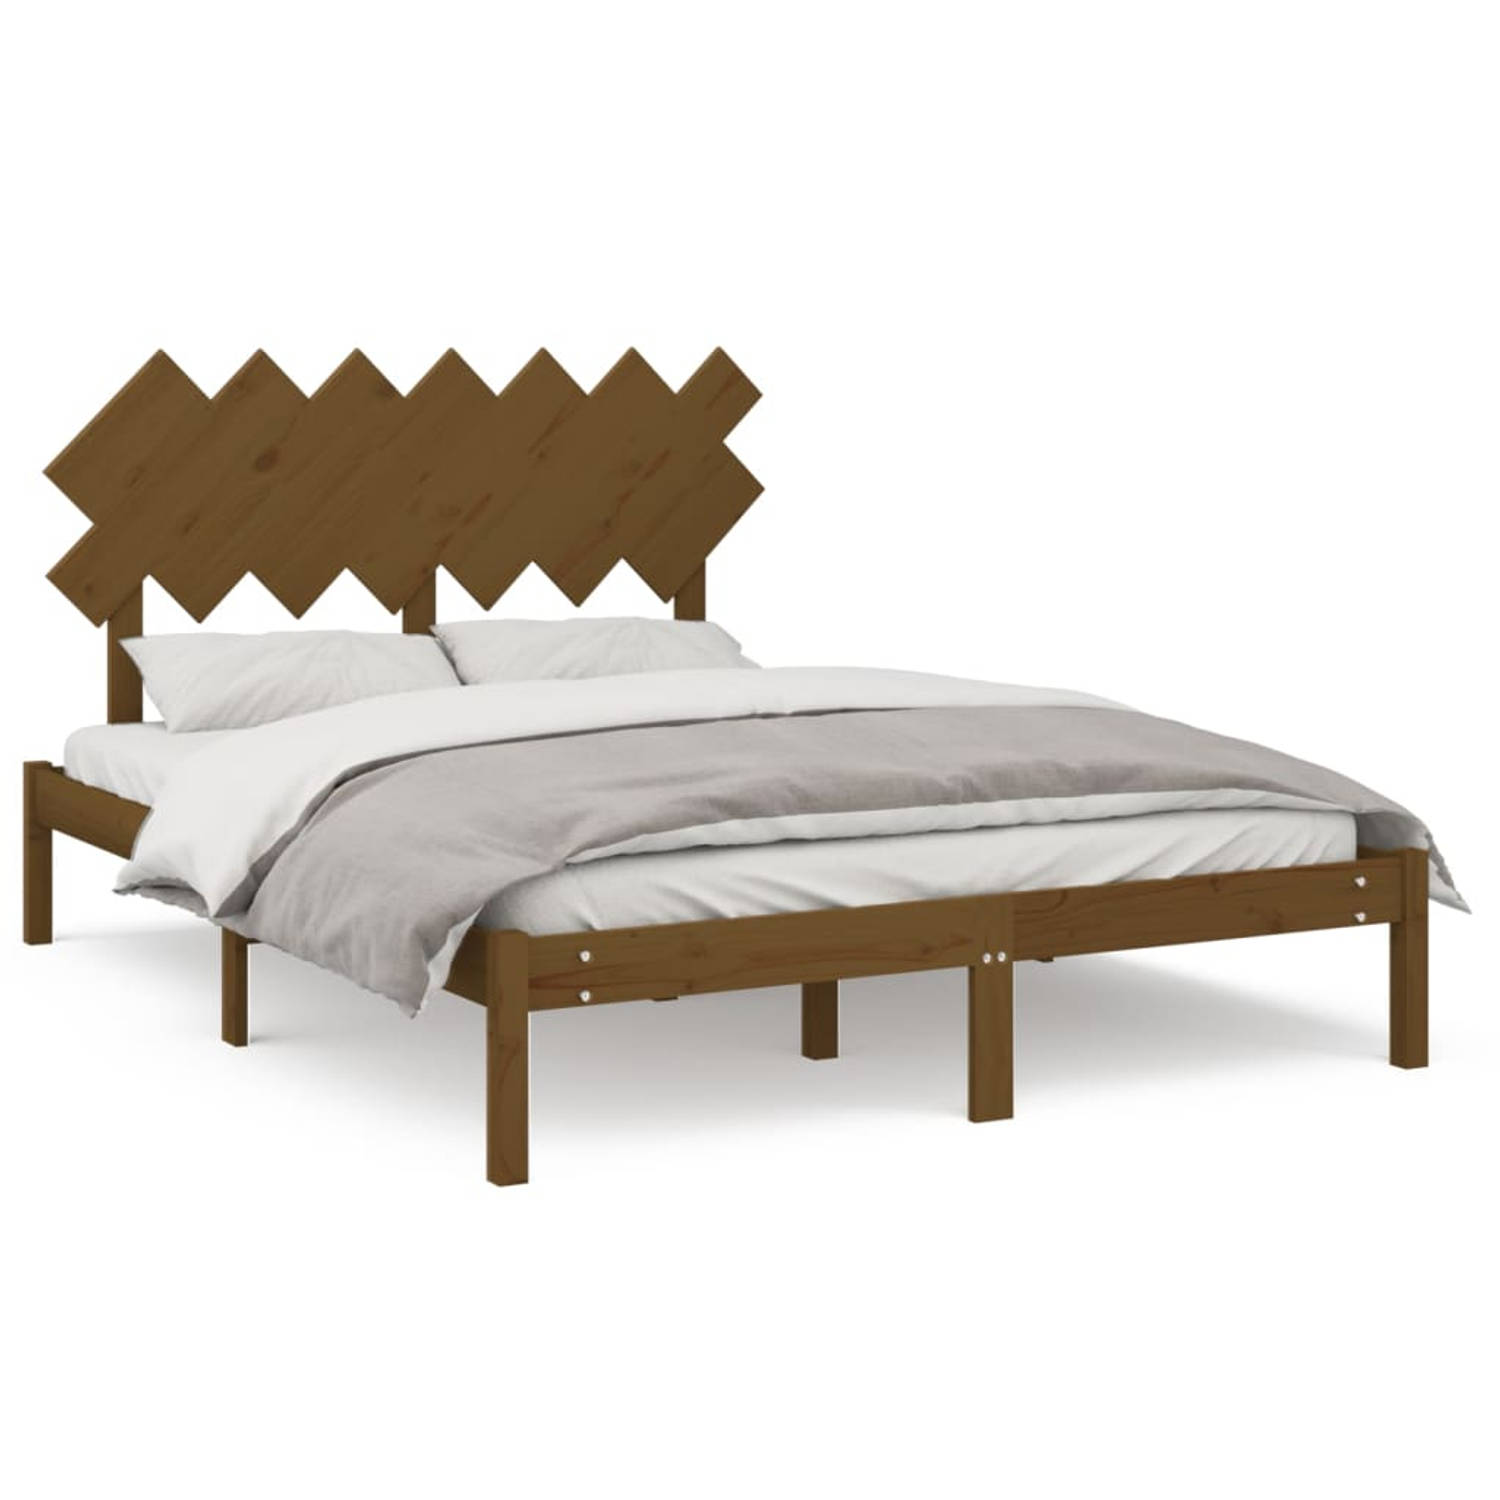 The Living Store Bedframe massief hout honingbruin 140x200 cm - Bedframe - Bedframes - Bed - Bedbodem - Ledikant - Bed Frame - Massief Houten Bedframe - Slaapmeubel - Tweepersoonsb